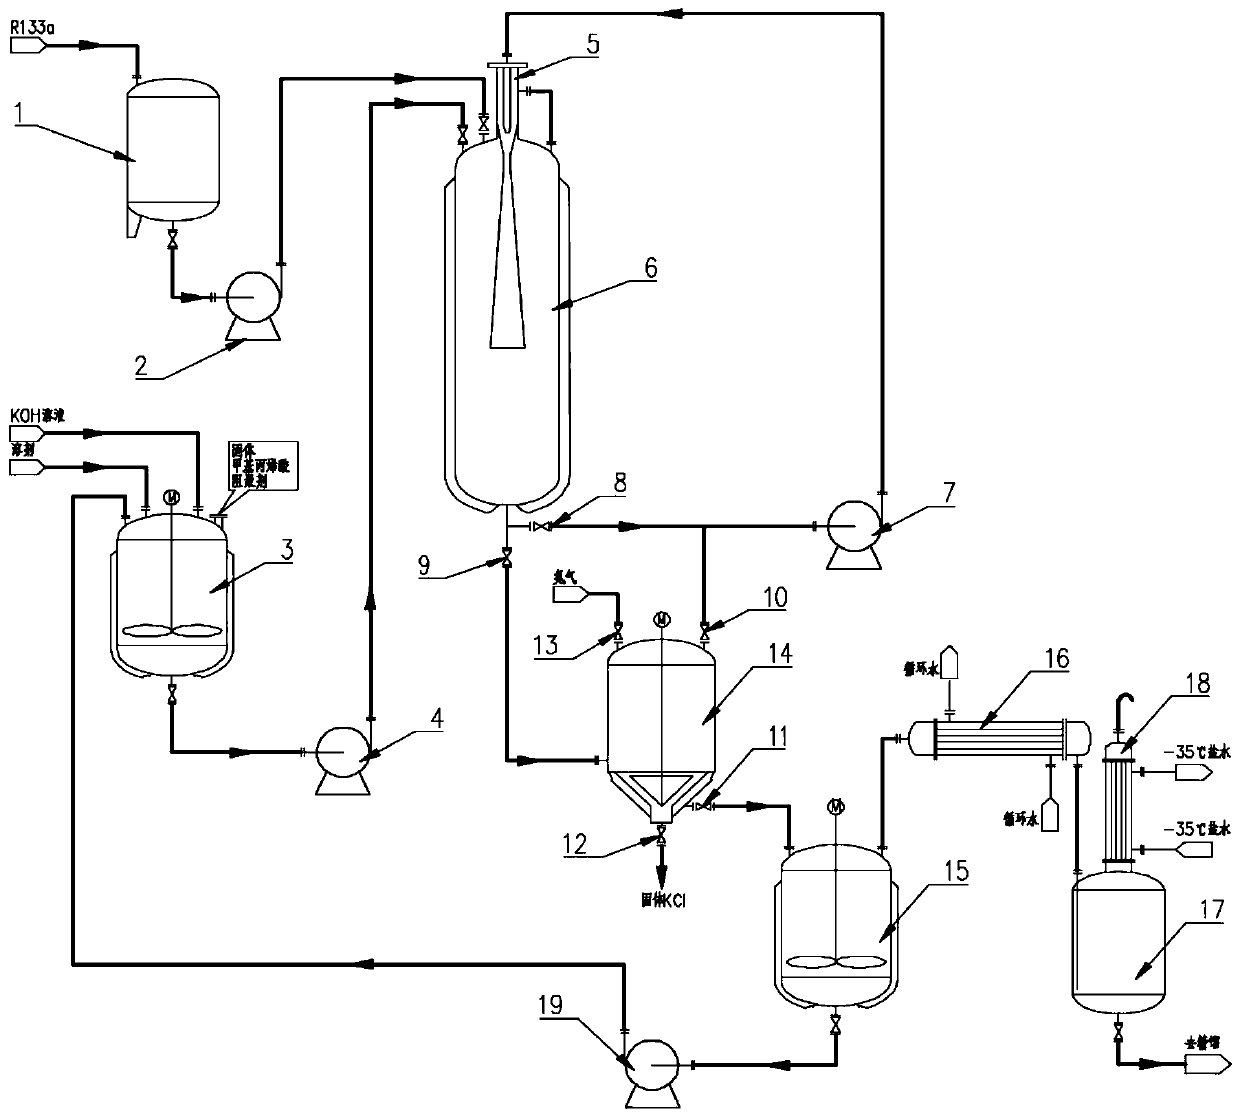 Flexible reaction device and method for trifluoroethanol/trifluoroethyl methacrylate